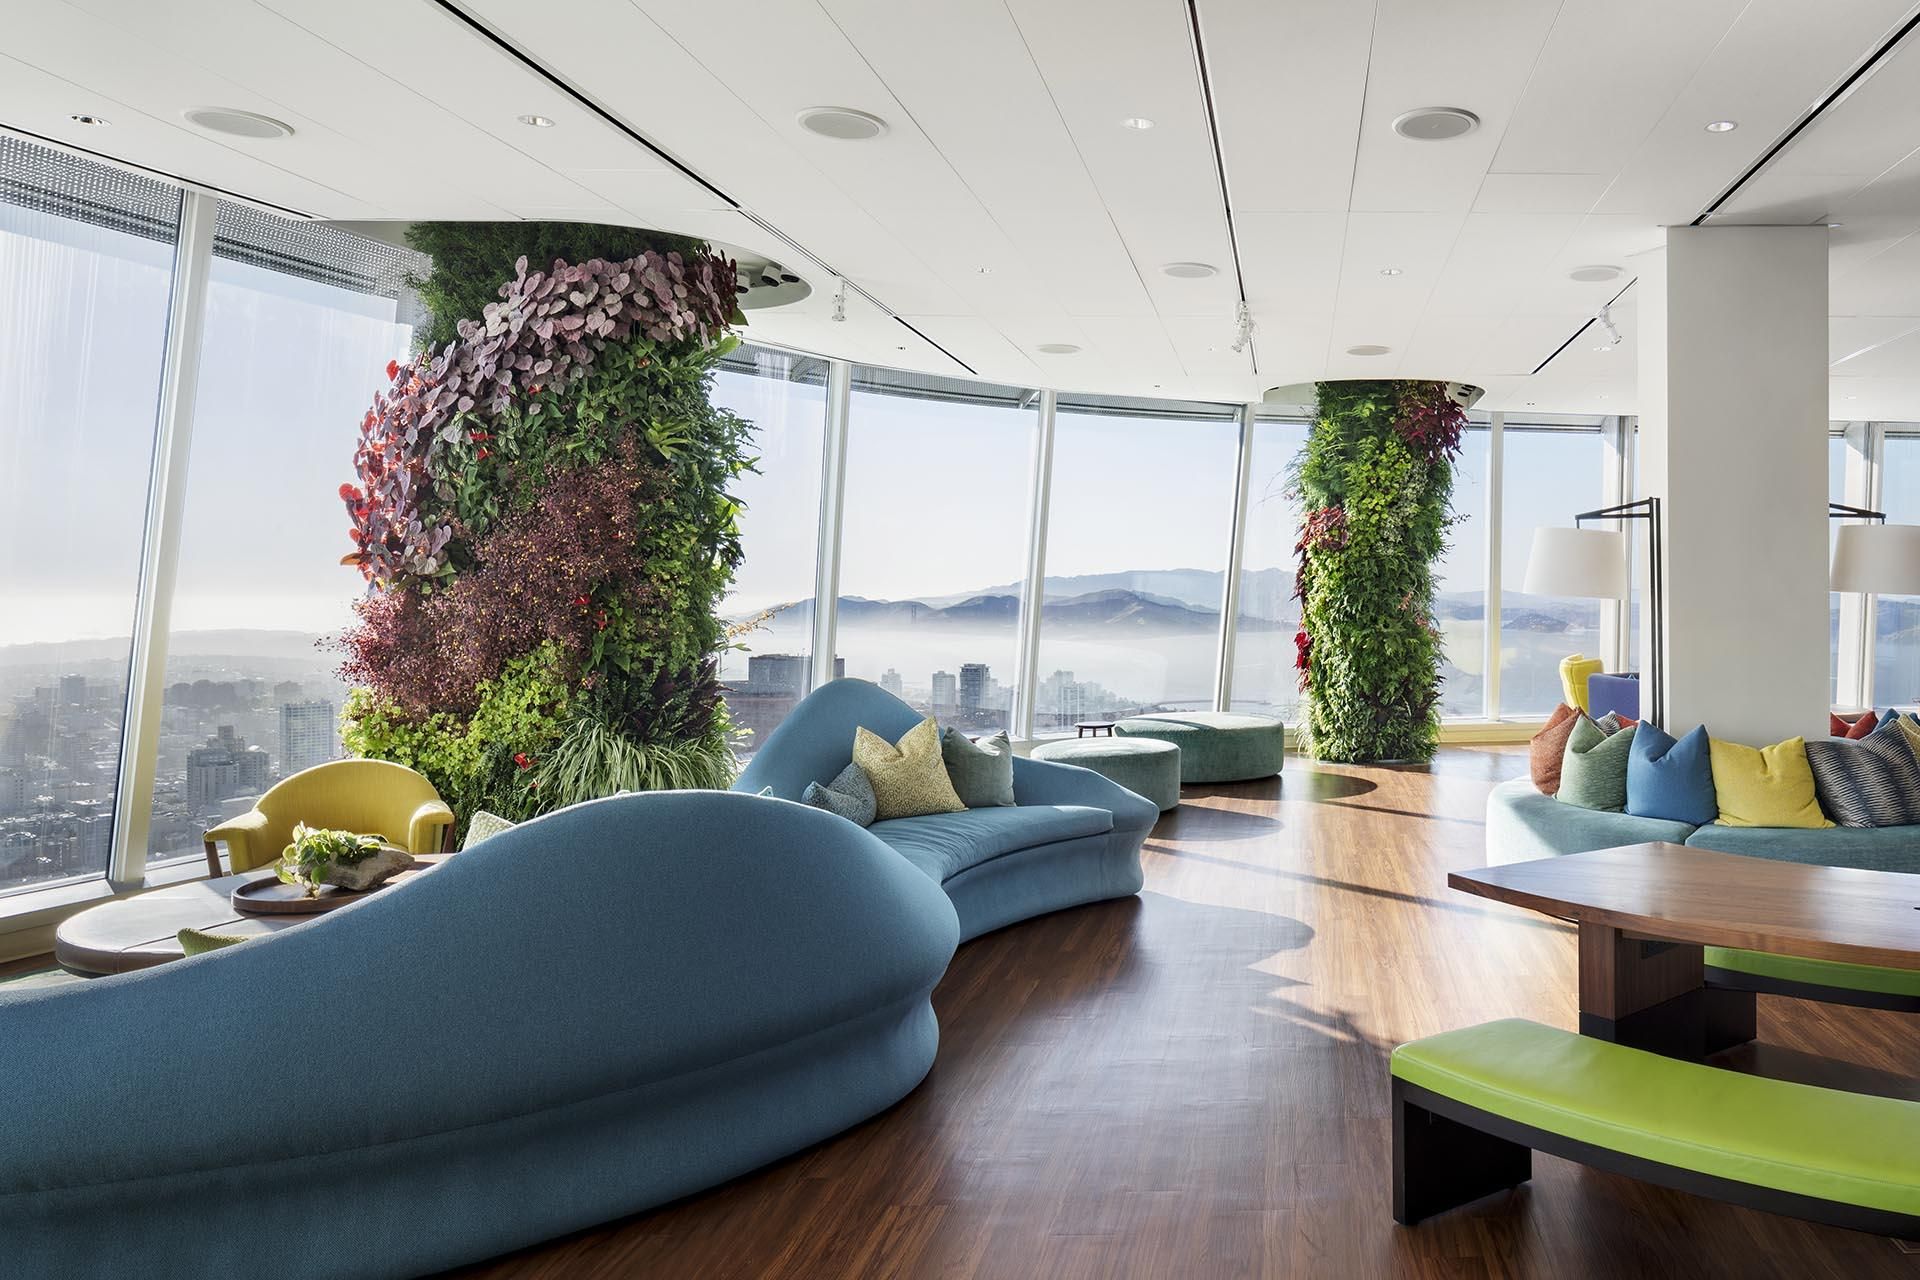 Работа с наслаждением: в одном из офисов Сан-Франциско построили вертикальные сады 